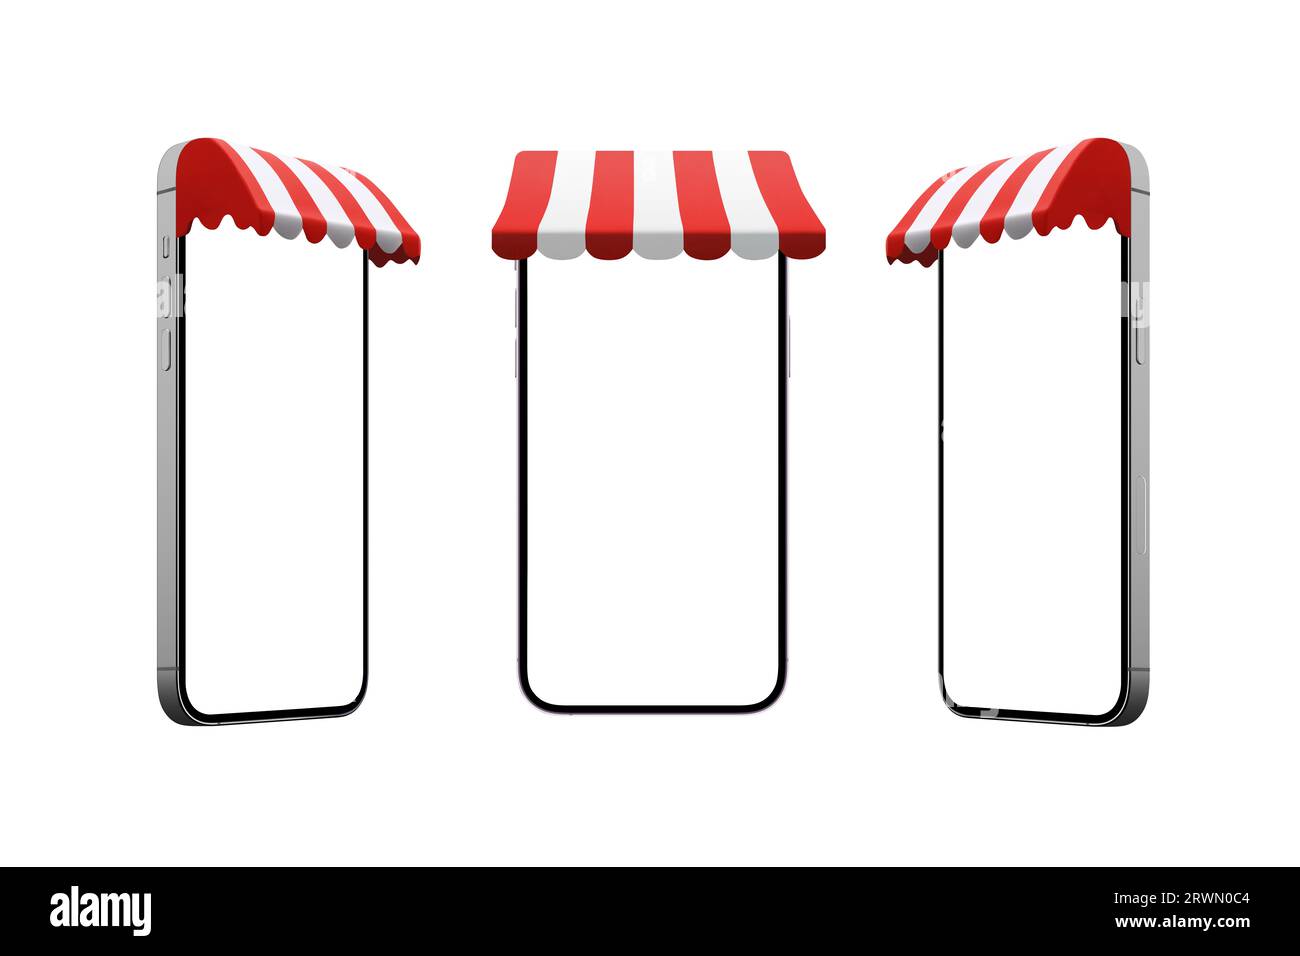 Telefon mit Markise in drei Positionen. Isotonierte Anzeige und Hintergrund für Mockup, Shopping-App-Promotion Stockfoto